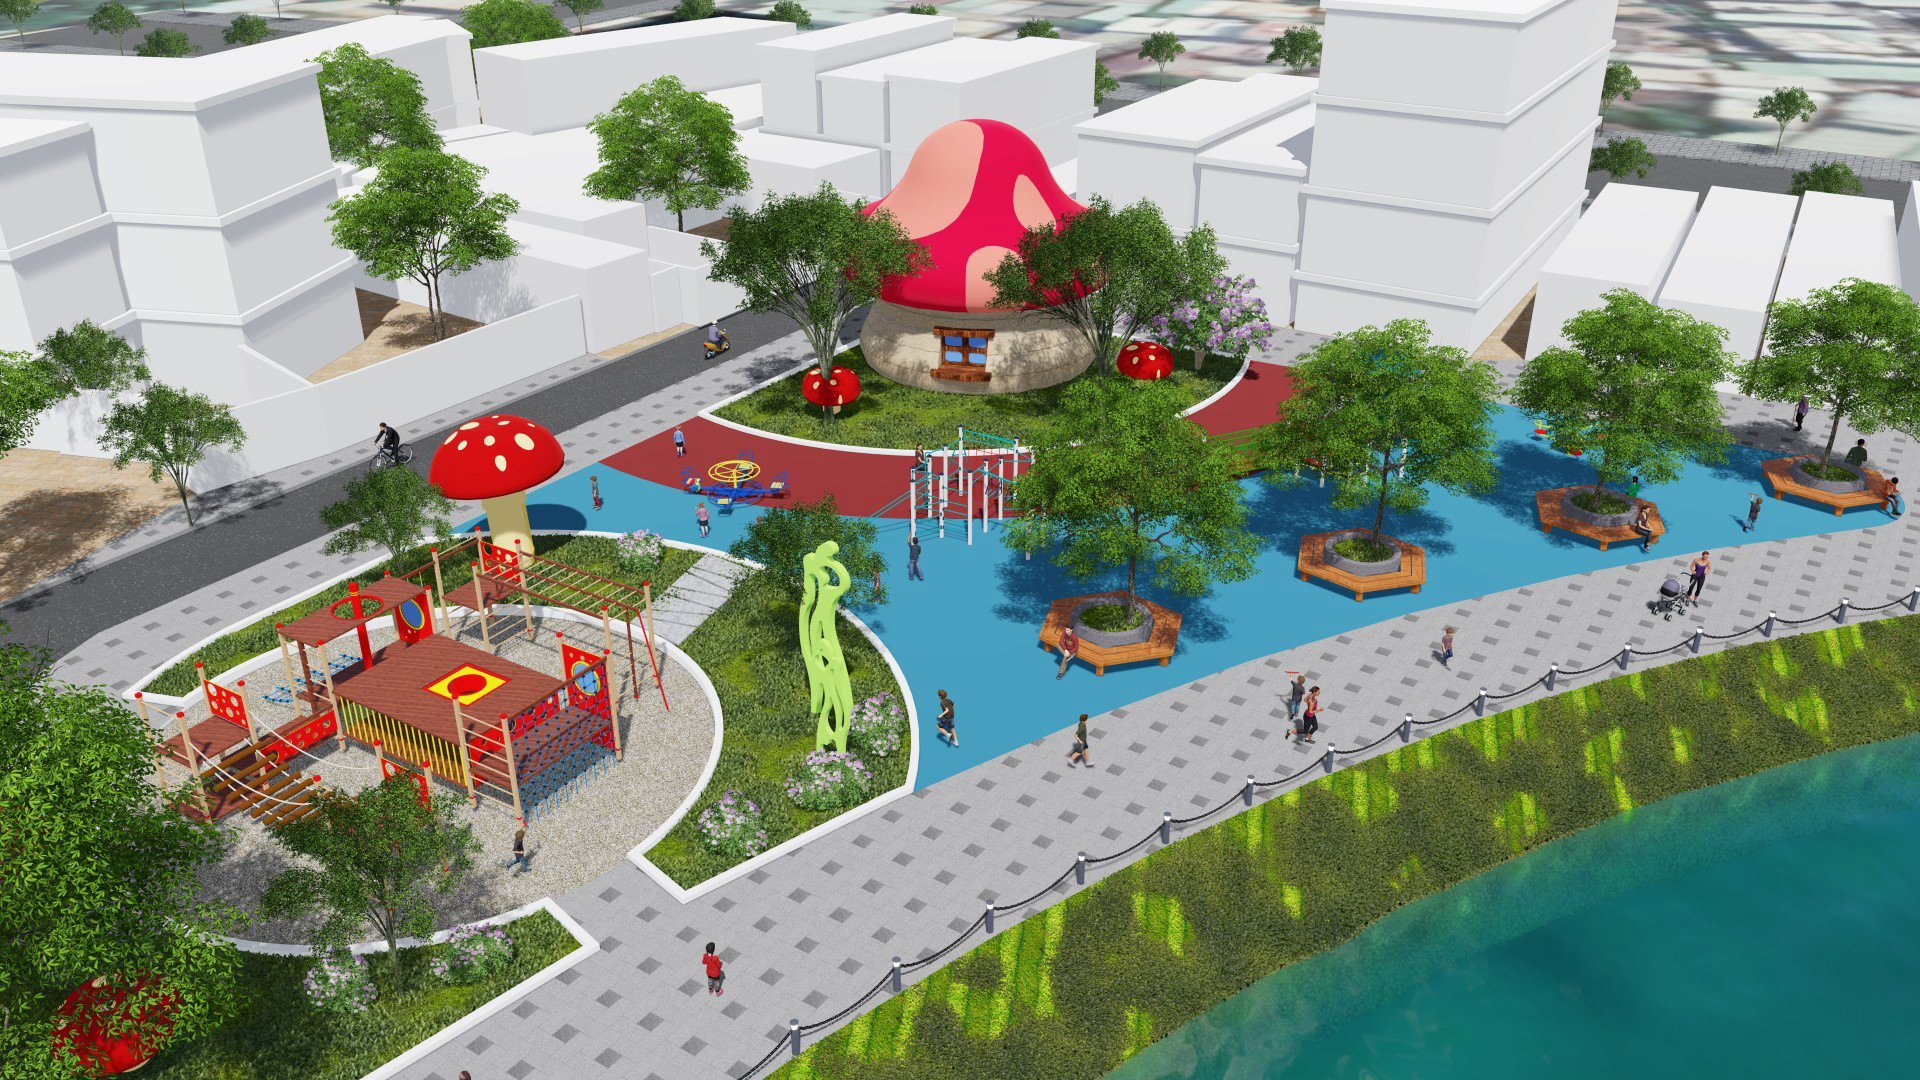 Dự án công viên ao cá phường 2 (TP. Vũng Tàu) là một trong những công trình công cộng góp phần chỉnh trang đô thị được triển khai từ đầu năm 2023. Khi hoàn thiện, dự án  sẽ mang đến một không gian xanh, điểm đến hấp dẫn cho người dân và du khách.